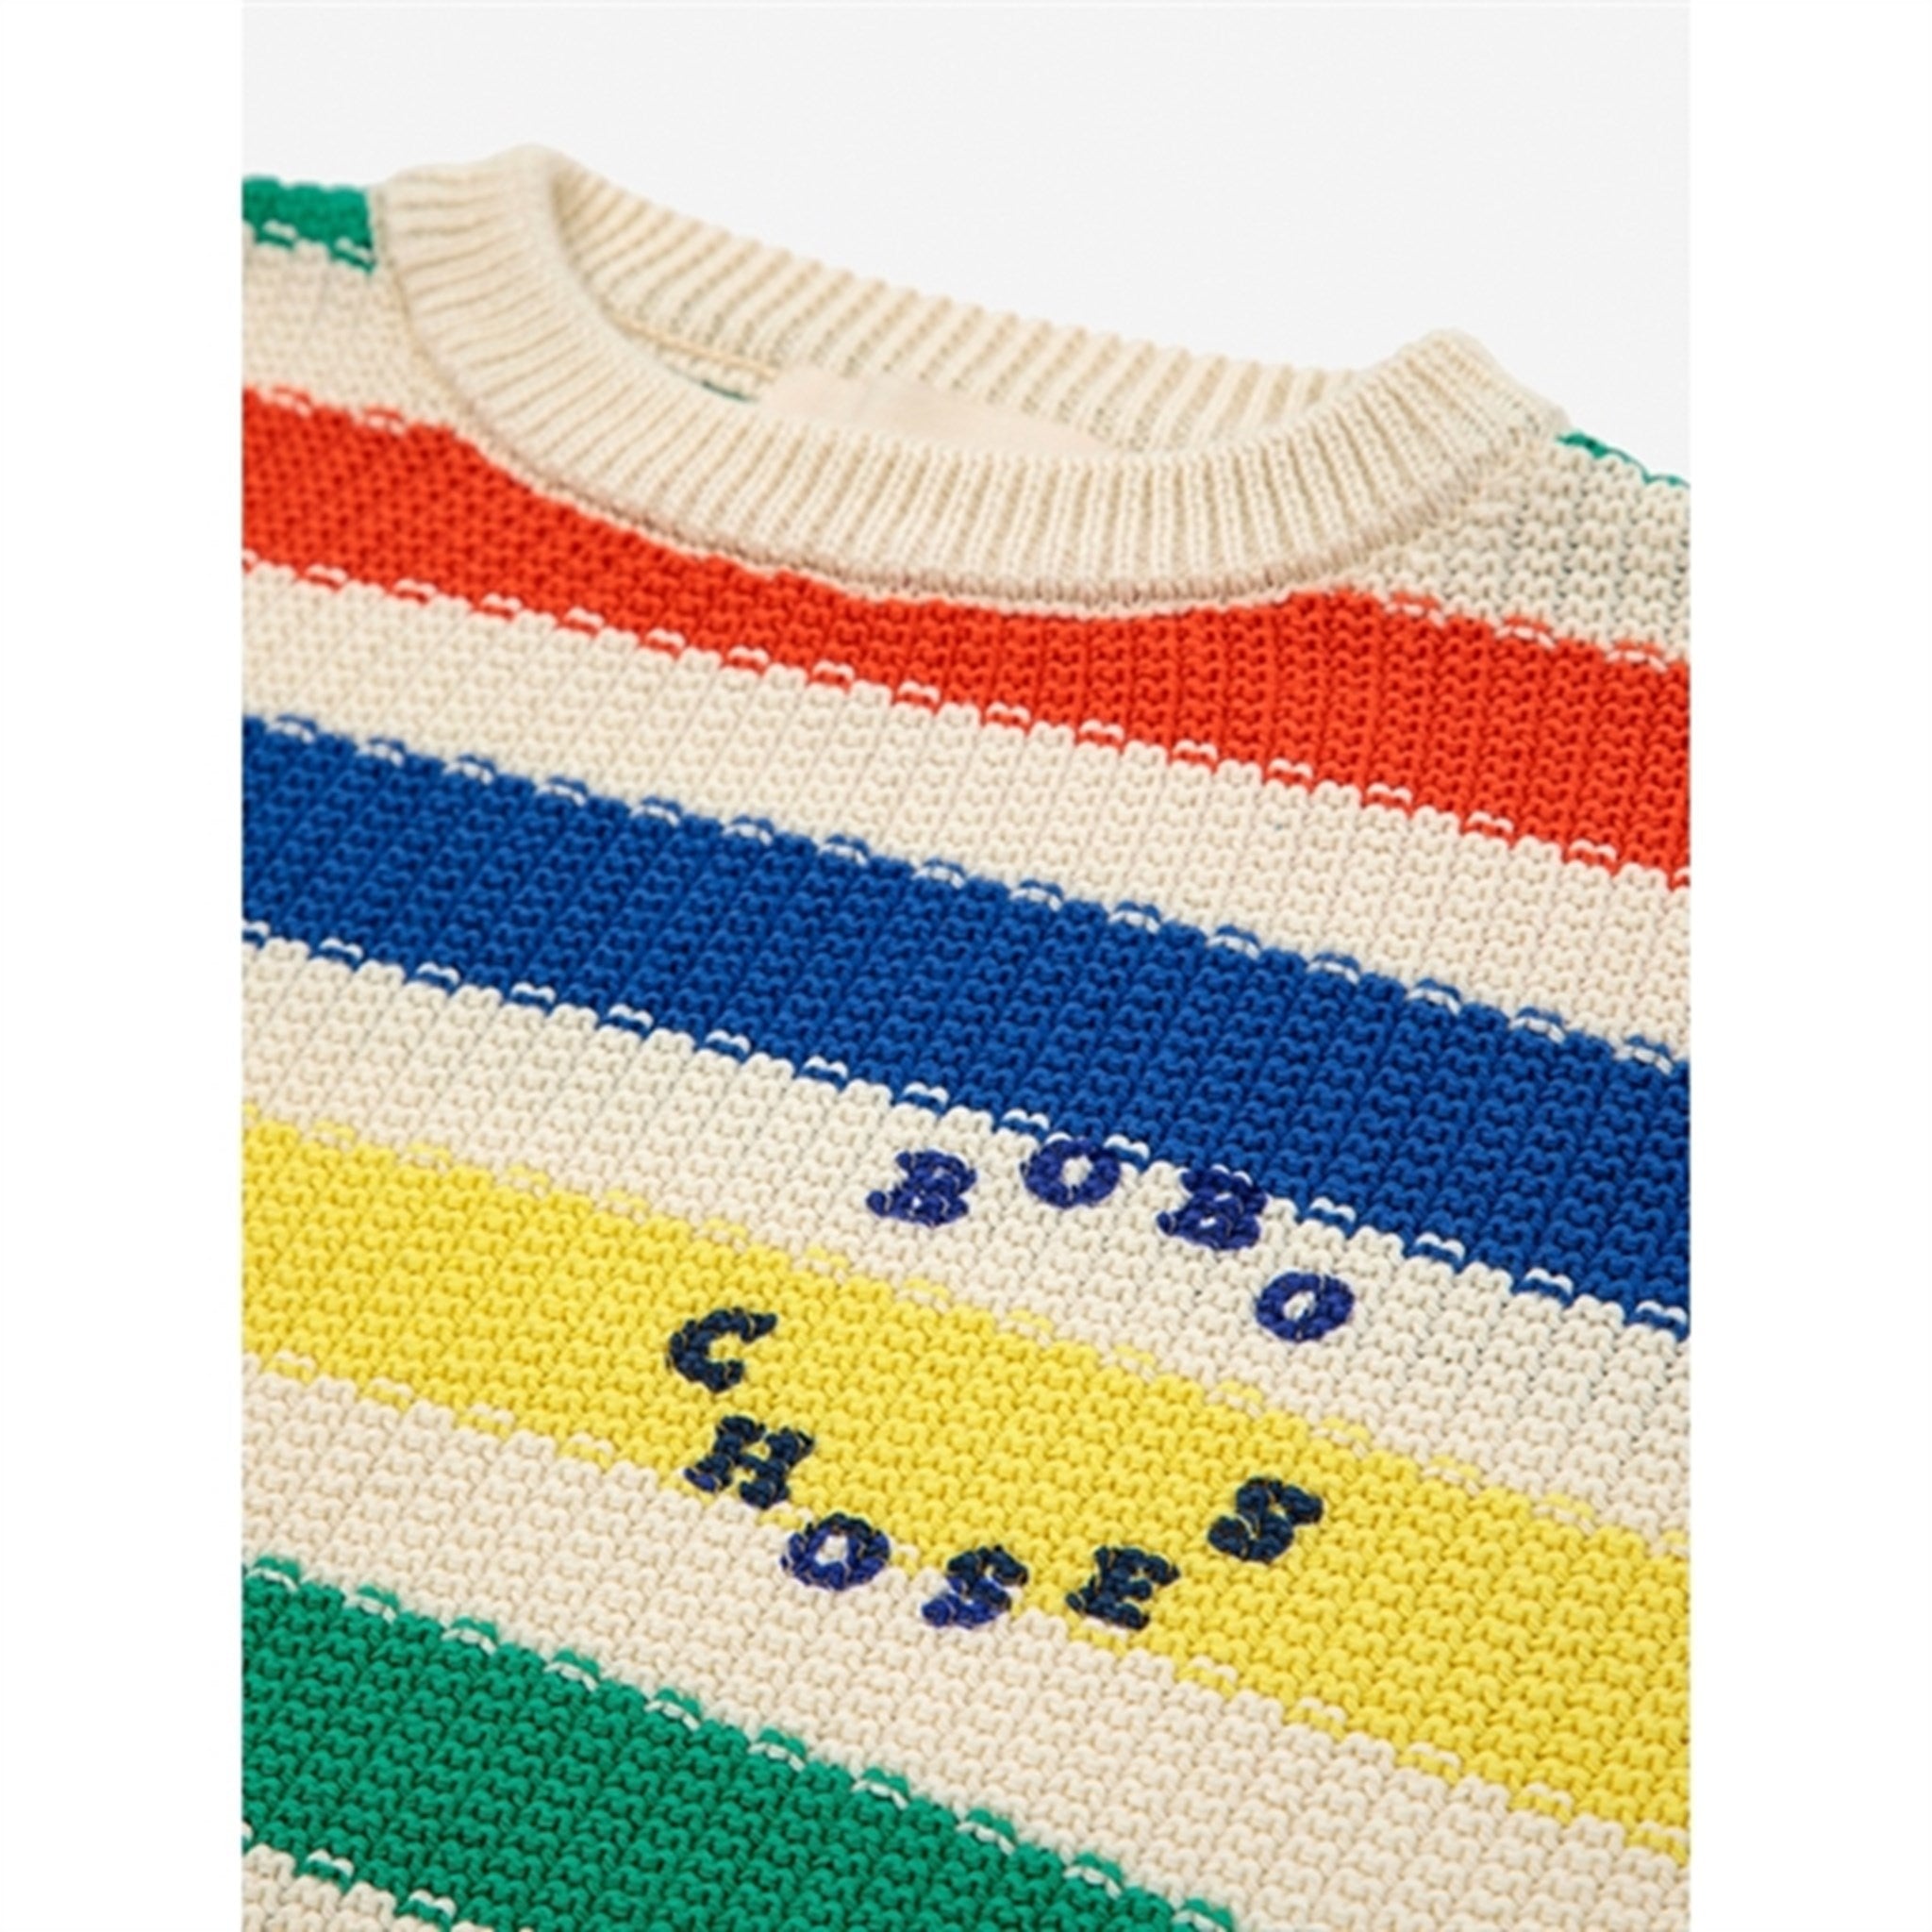 Bobo Choses Multicolor Stripes Sweater Round Neck Multicolor 2